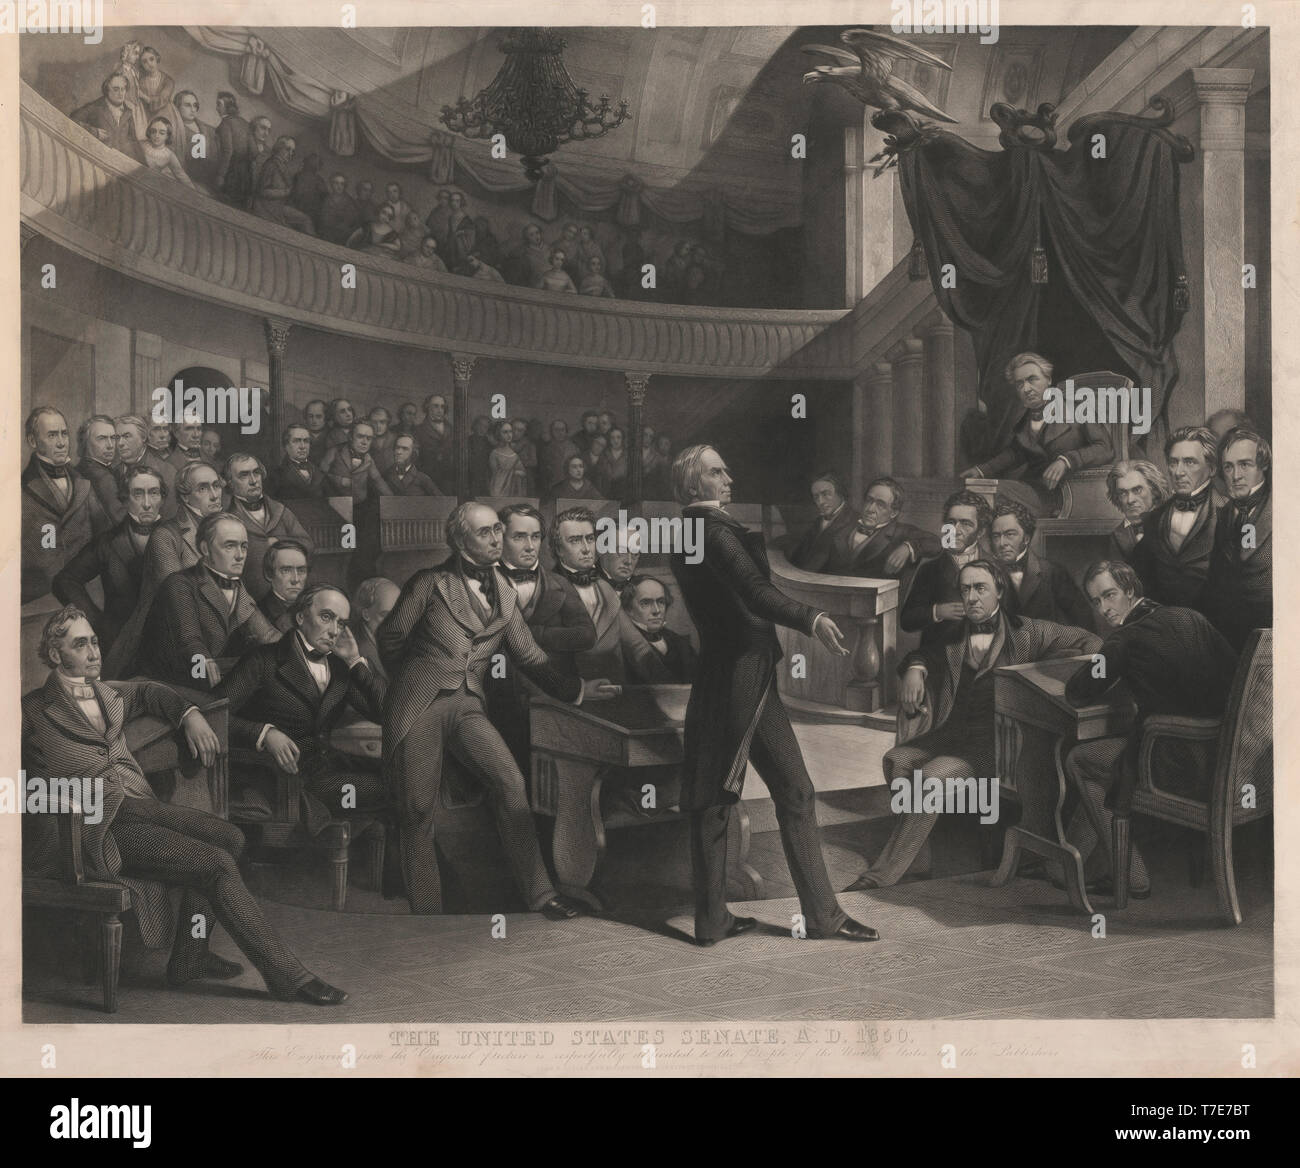 Le Sénat des États-Unis, en l'an 1850, Henry Clay parle du compromis de 1850 dans l'ancienne salle du Sénat, dessiné par P.F. Rothermel, gravée par R. Baile Coimín, publié par John M. Butler et Alfred Long, 1855 Banque D'Images